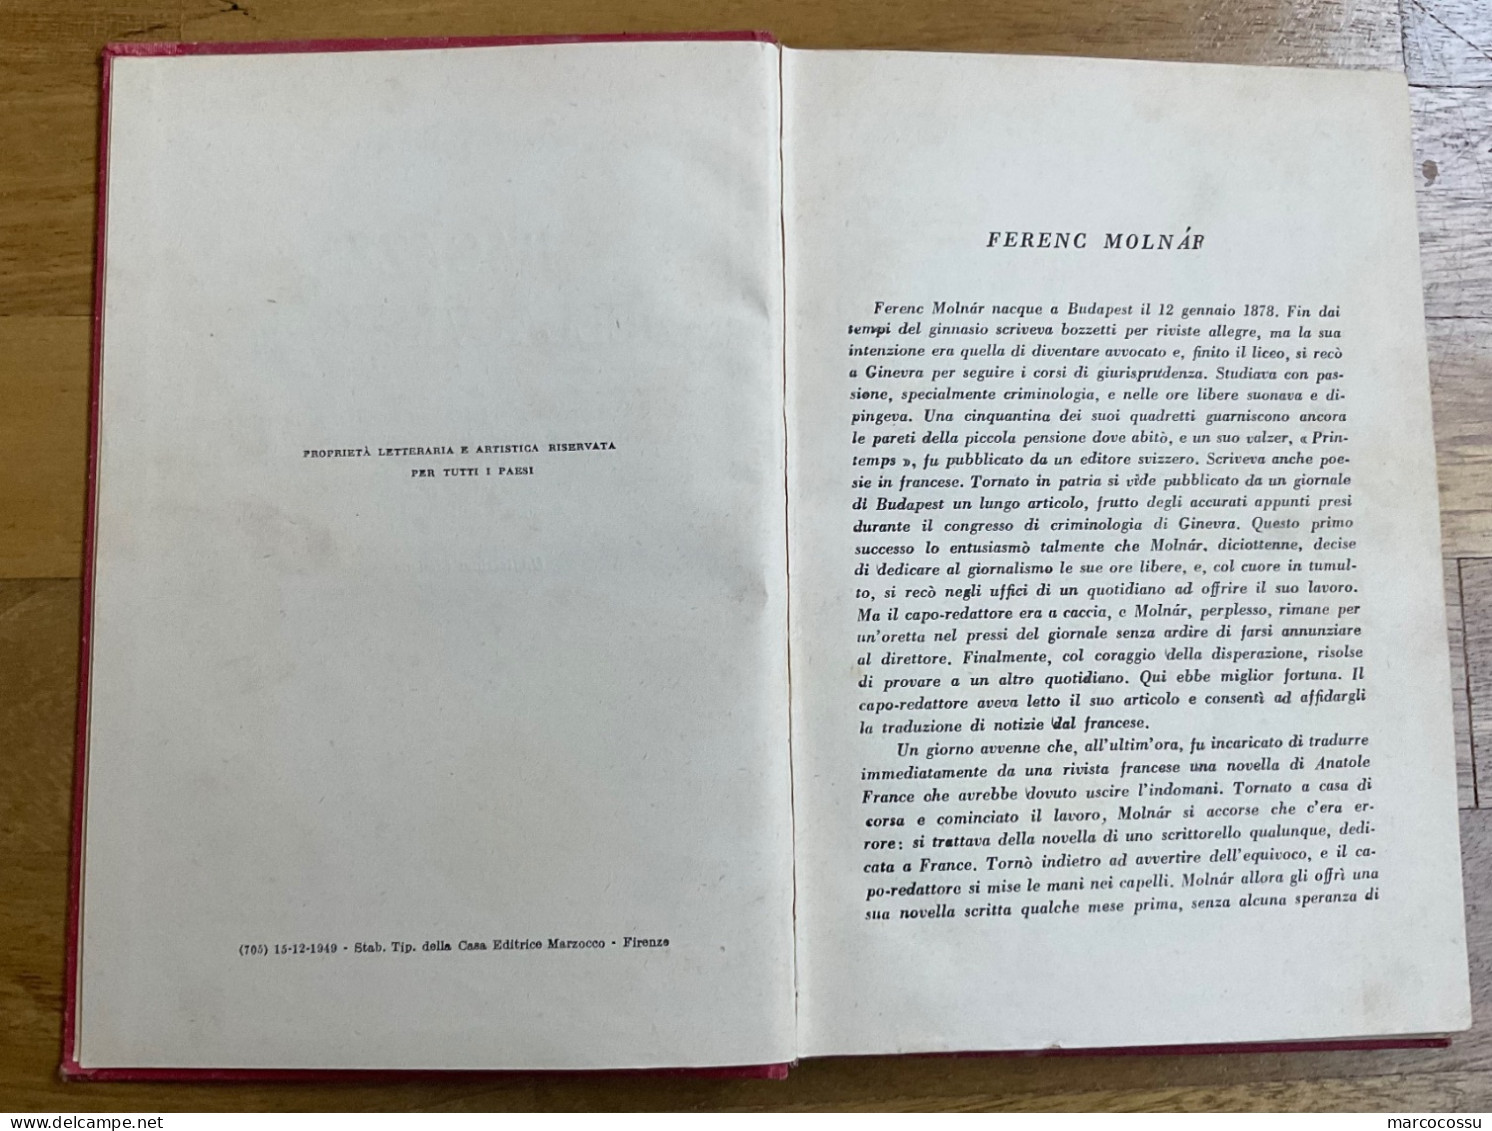 Libro Del 1949 I Ragazzi Della Via Pal - Classici